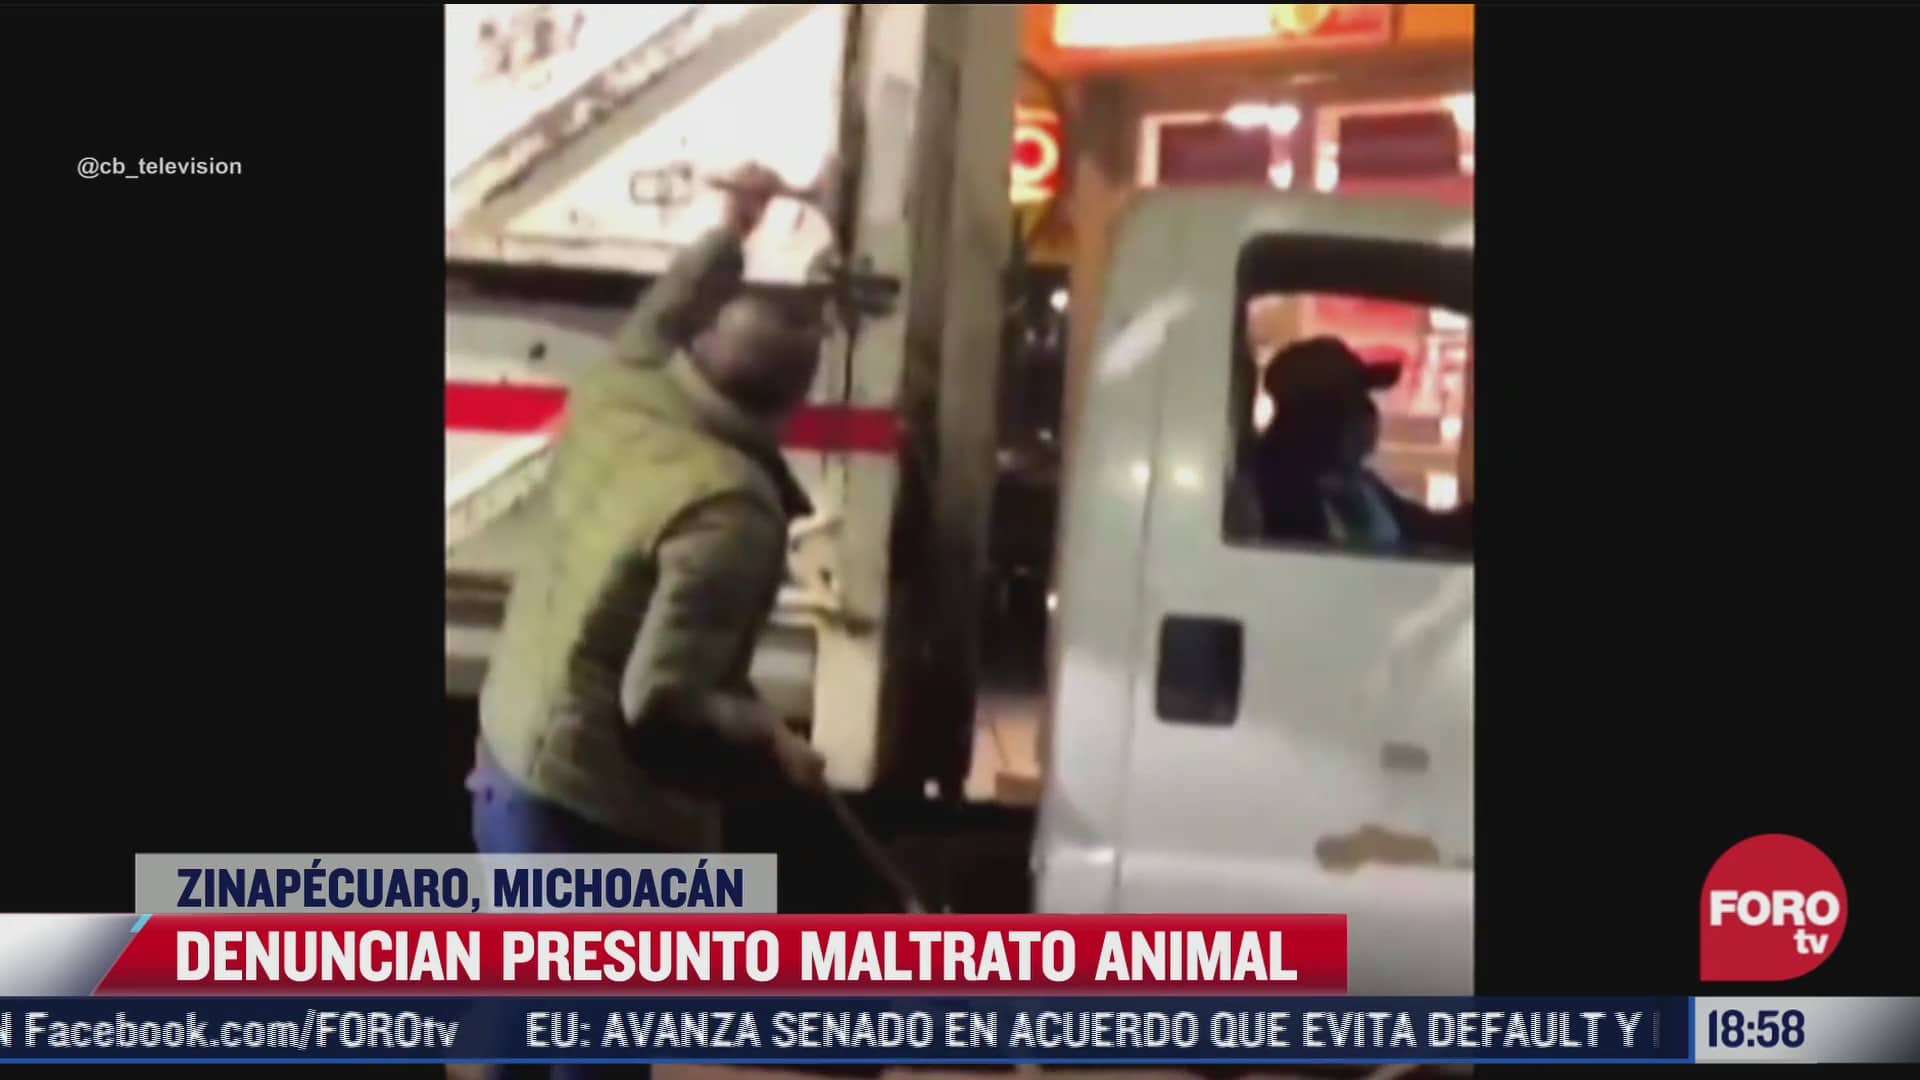 denuncian maltrato animal en zinapecuaro michoacan